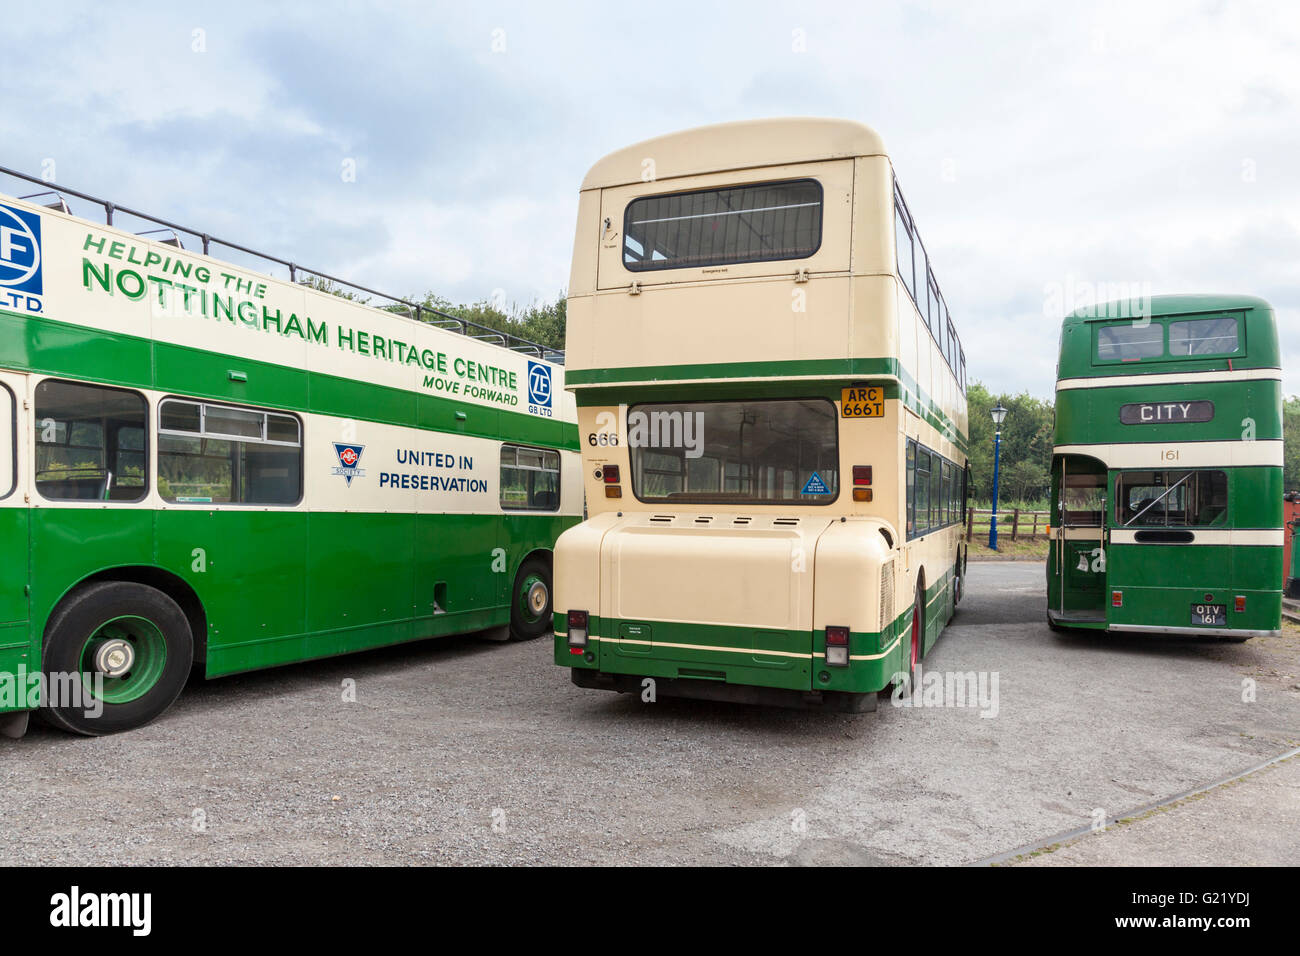 Vieux bus à impériale de l'arrière au centre du patrimoine mondial, le transport de Nottingham, Nottinghamshire Ruddington, England, UK Banque D'Images